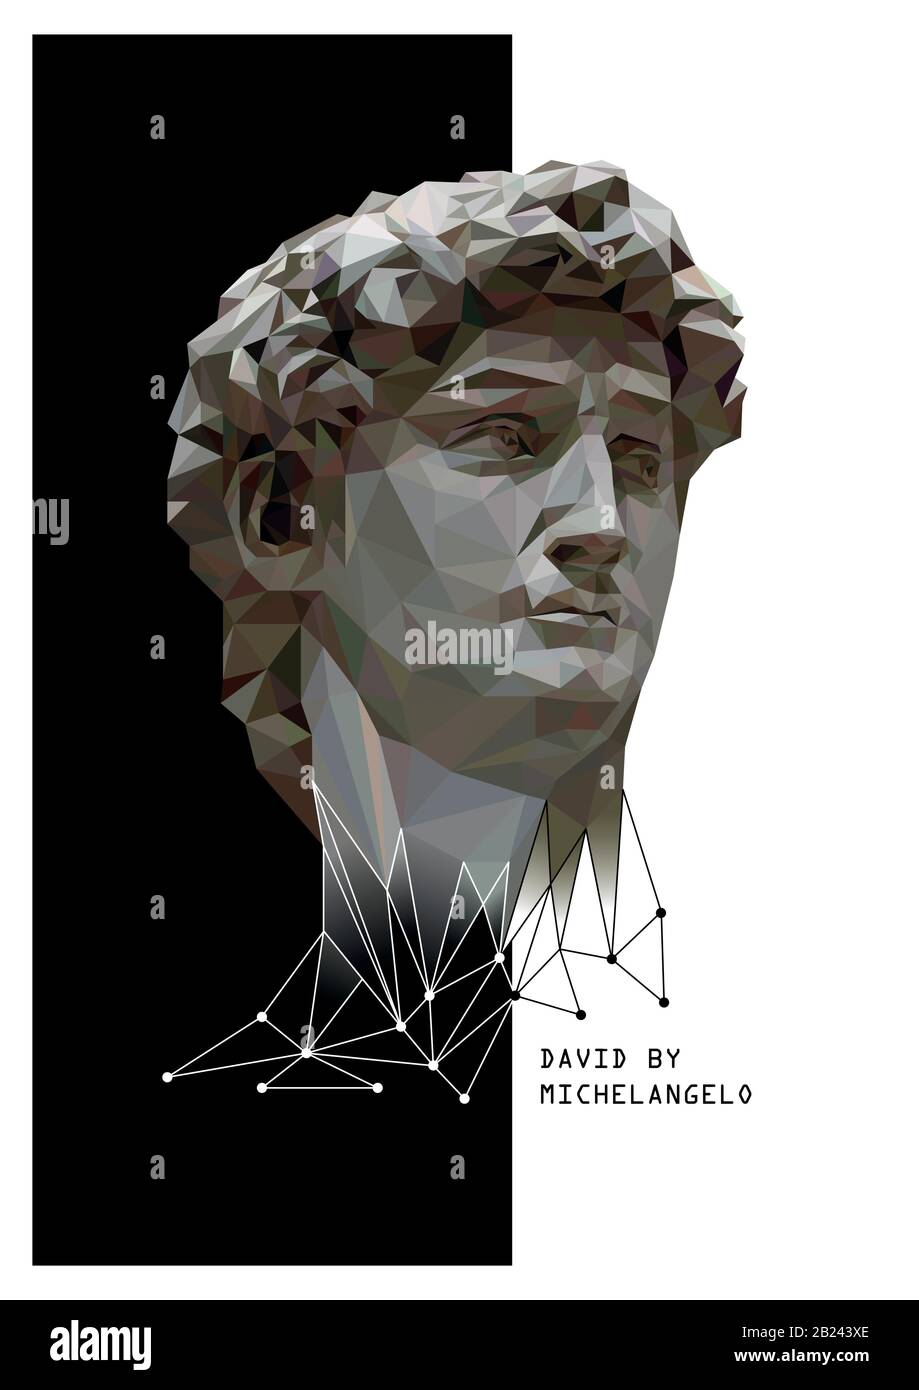 Illustration abstraite de David par Michel-Ange. Fond noir et blanc. Style poly faible. Illustration vectorielle. Illustration de Vecteur